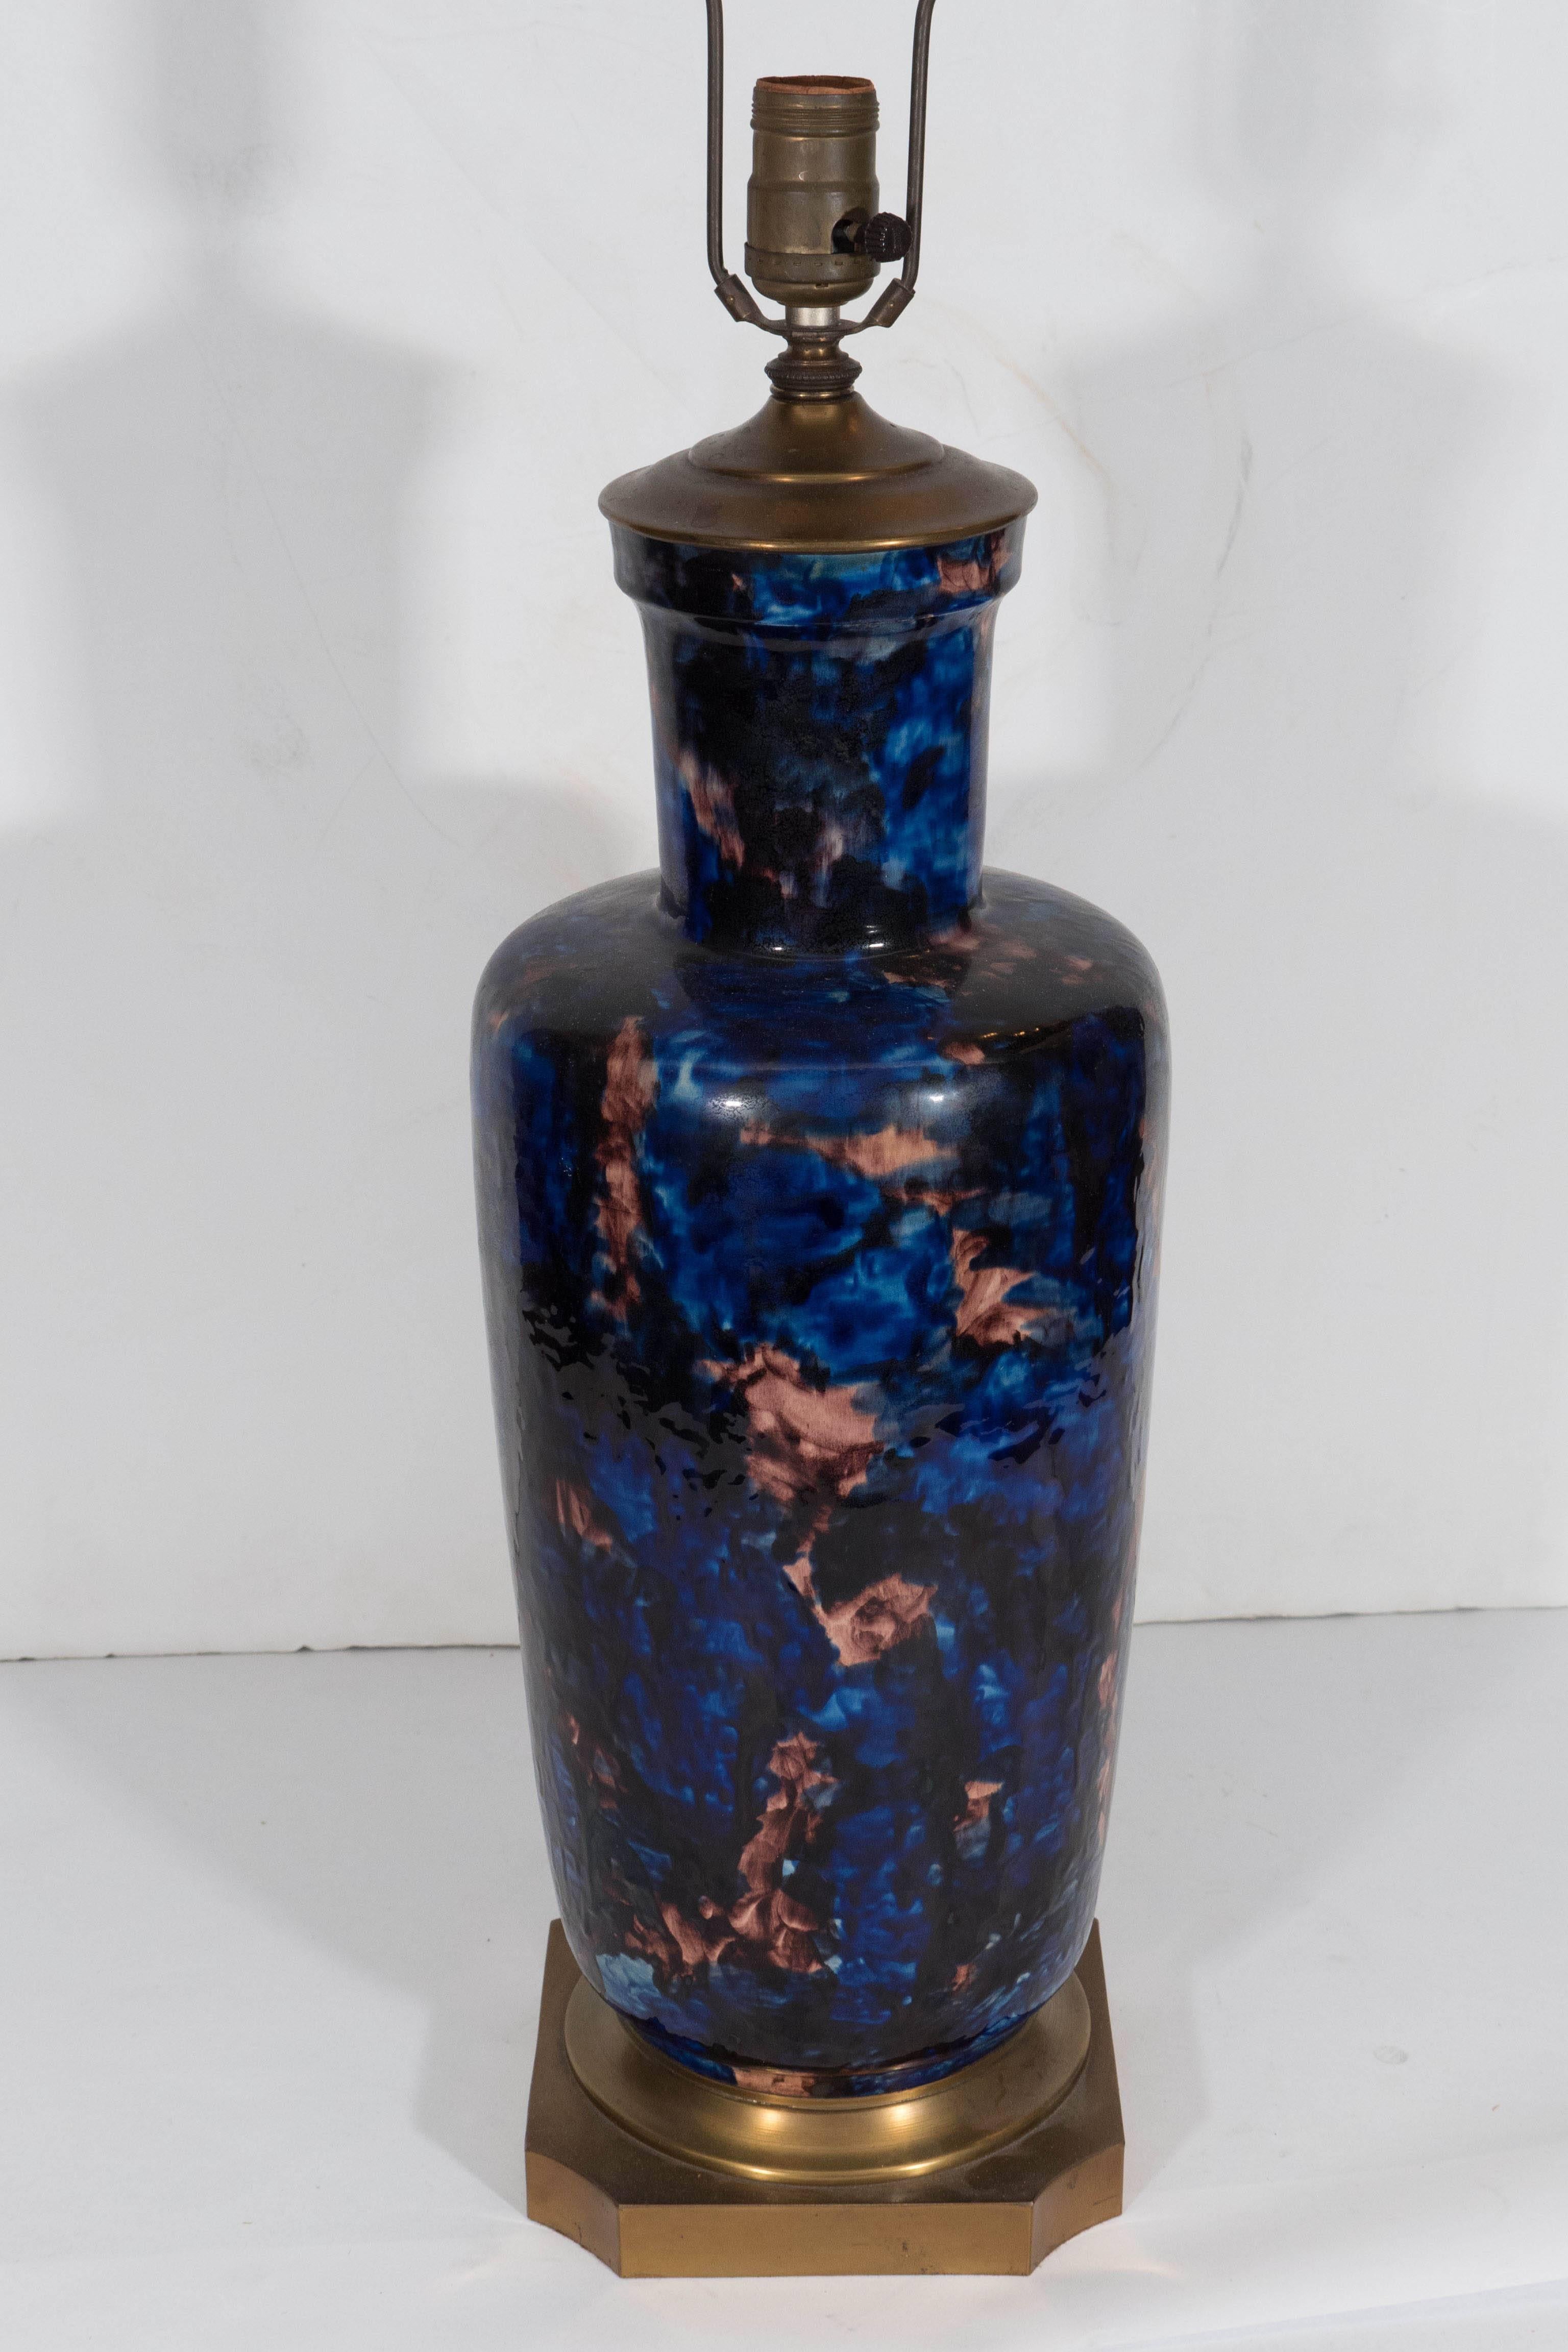 20th Century Midcentury Hand-Painted Ceramic Vase Lamp in Cobalt and Mauve